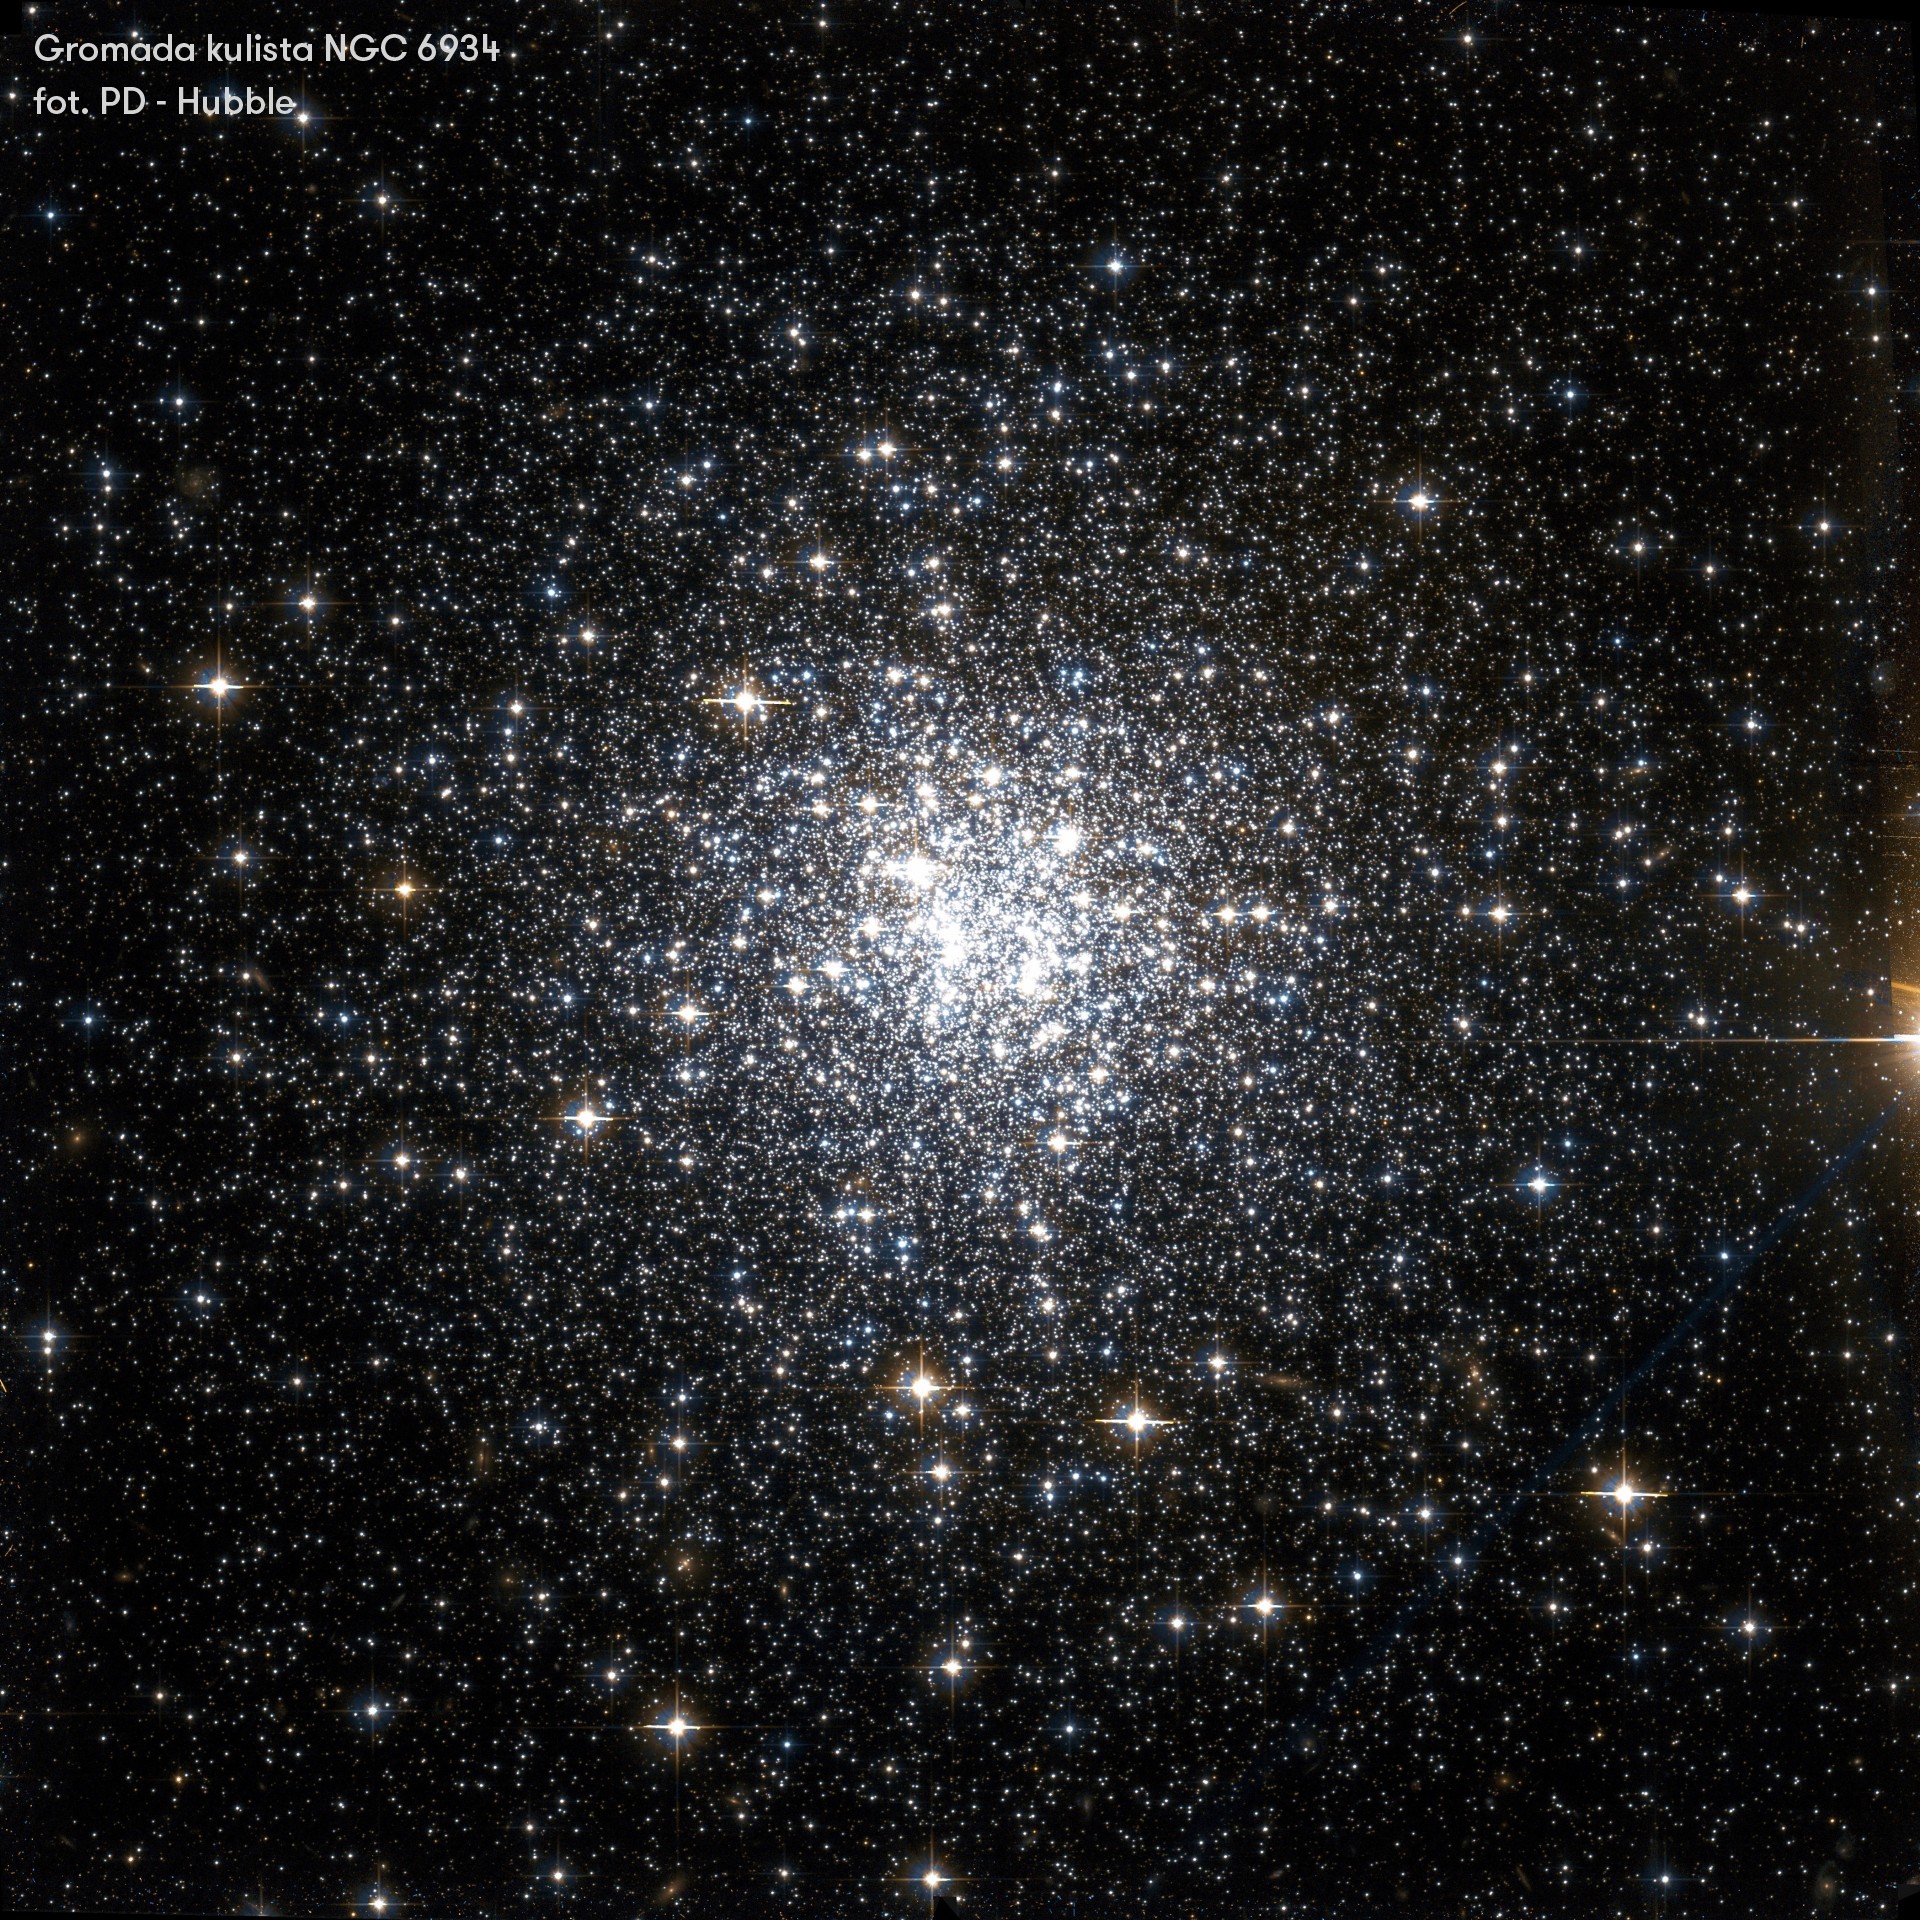 Gromada kulista NGC 6934